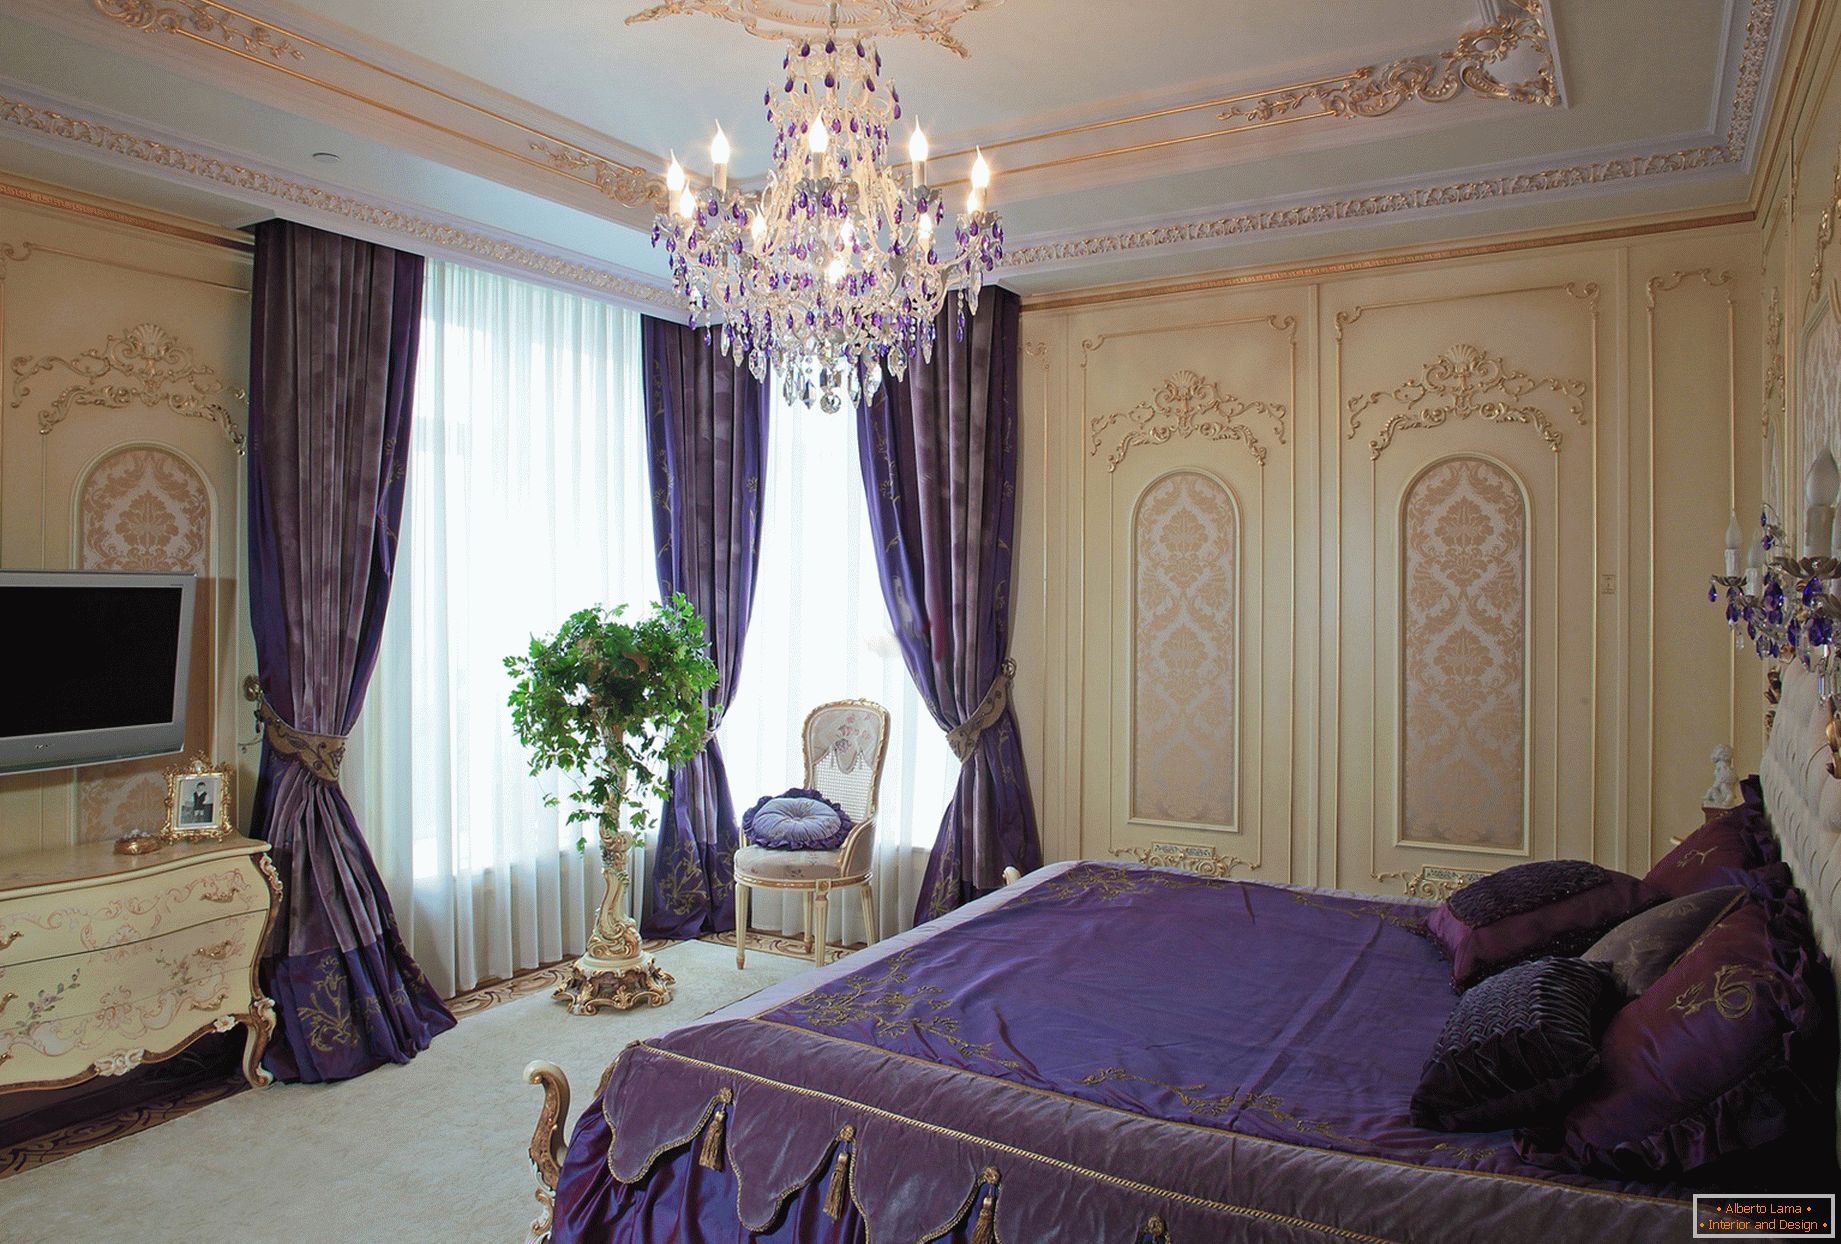 Stílusos hálószoba barokk stílusban. A finom tervezési koncepció - sötét lila függönyök kombinálva az ágynemű illeszkedik a hang.